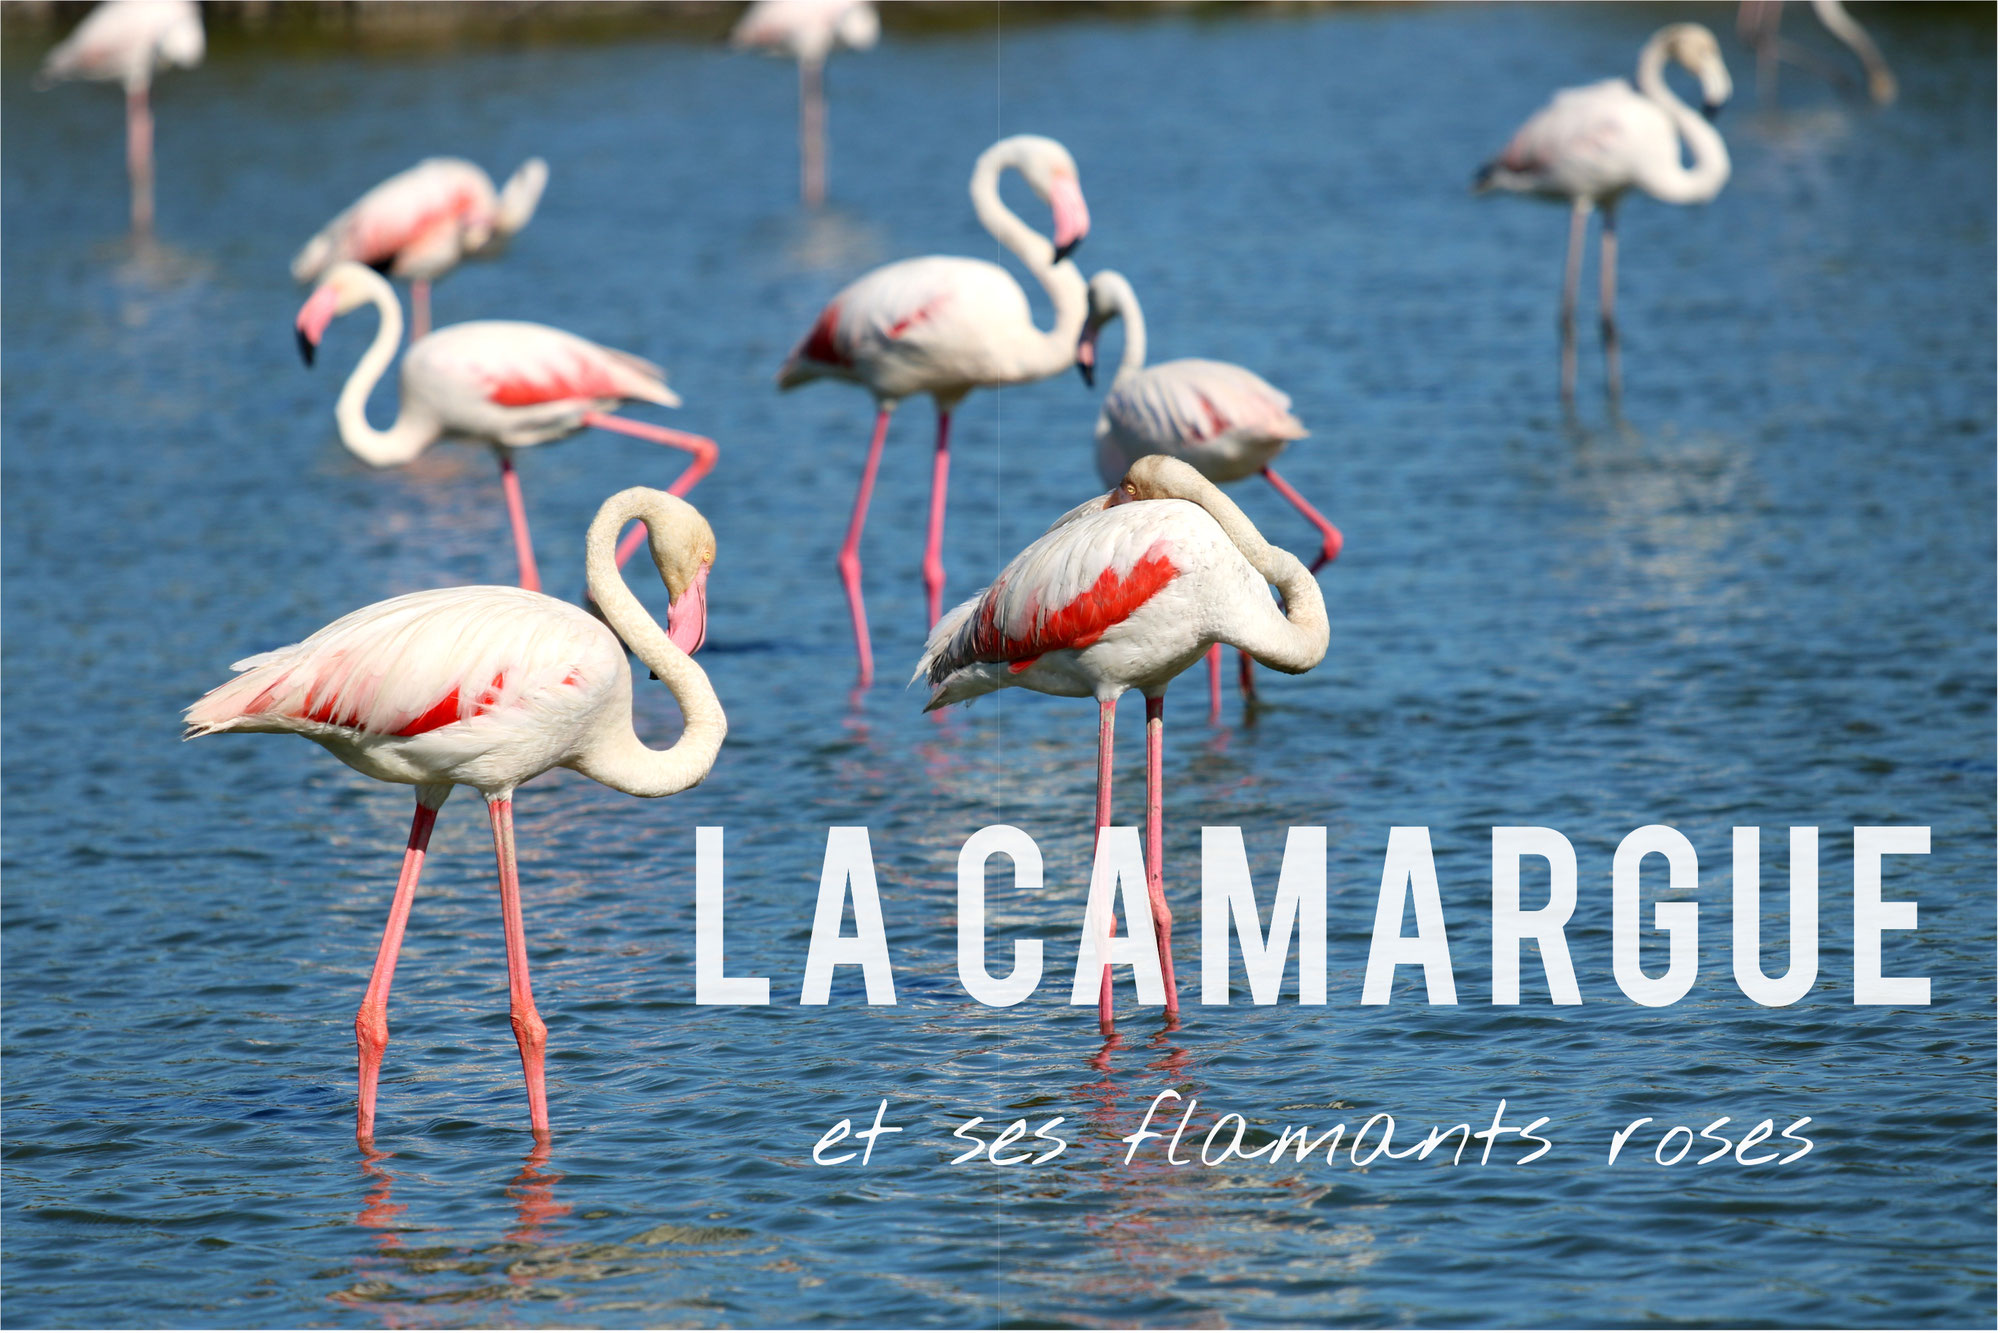 La Camargue et ses flamants roses